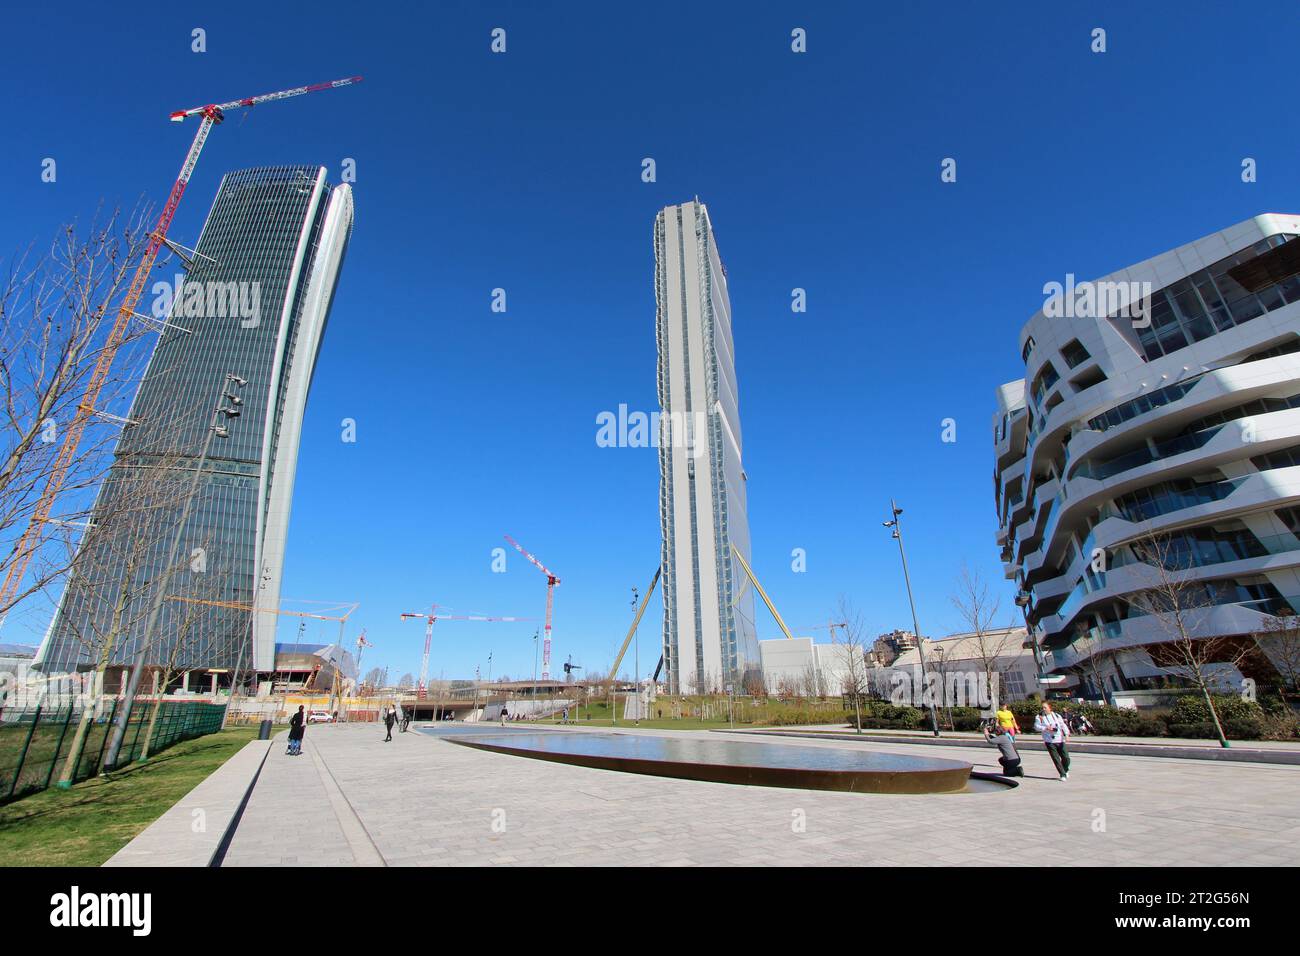 Milán, Italia. Residencia Hadid, torre Isozaki y torre Hadid en construcción en el nuevo complejo City Life, vista desde la plaza Elsa Morante Foto de stock